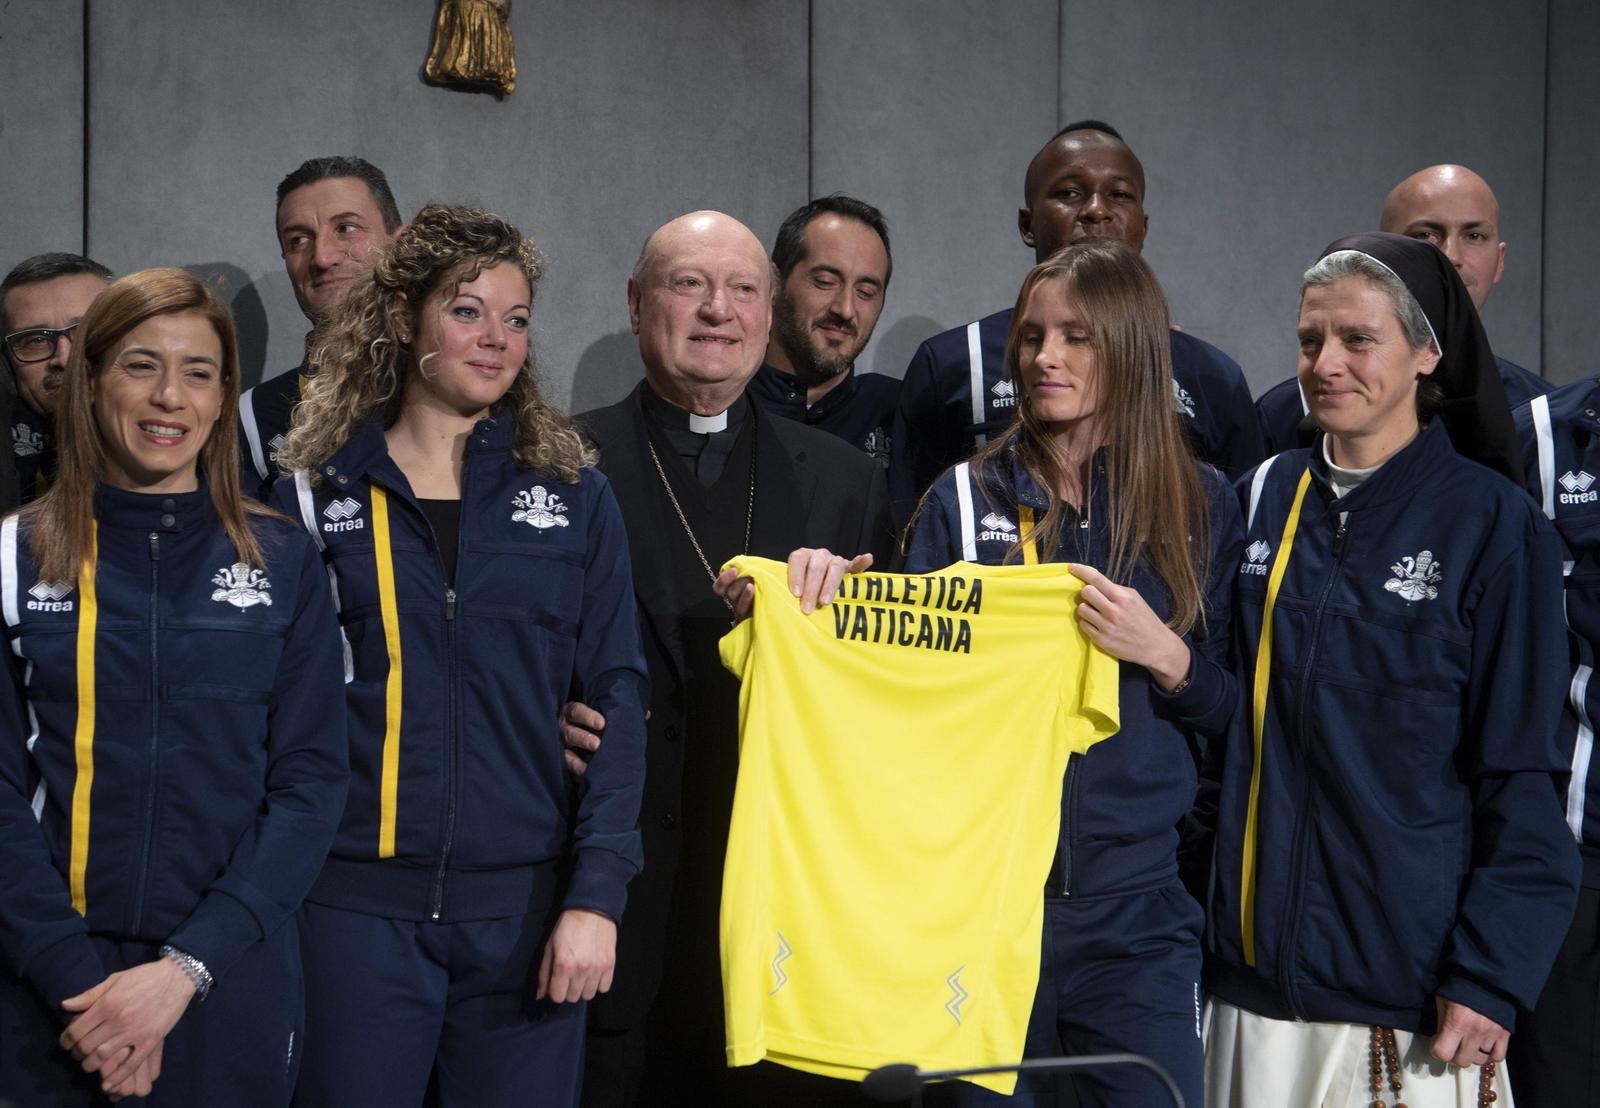 El presidente del Consejo Pontificio de la Cultura, Gianfranco Ravasi (c), posa junto a integrantes del equipo de atletismo del Vaticano.